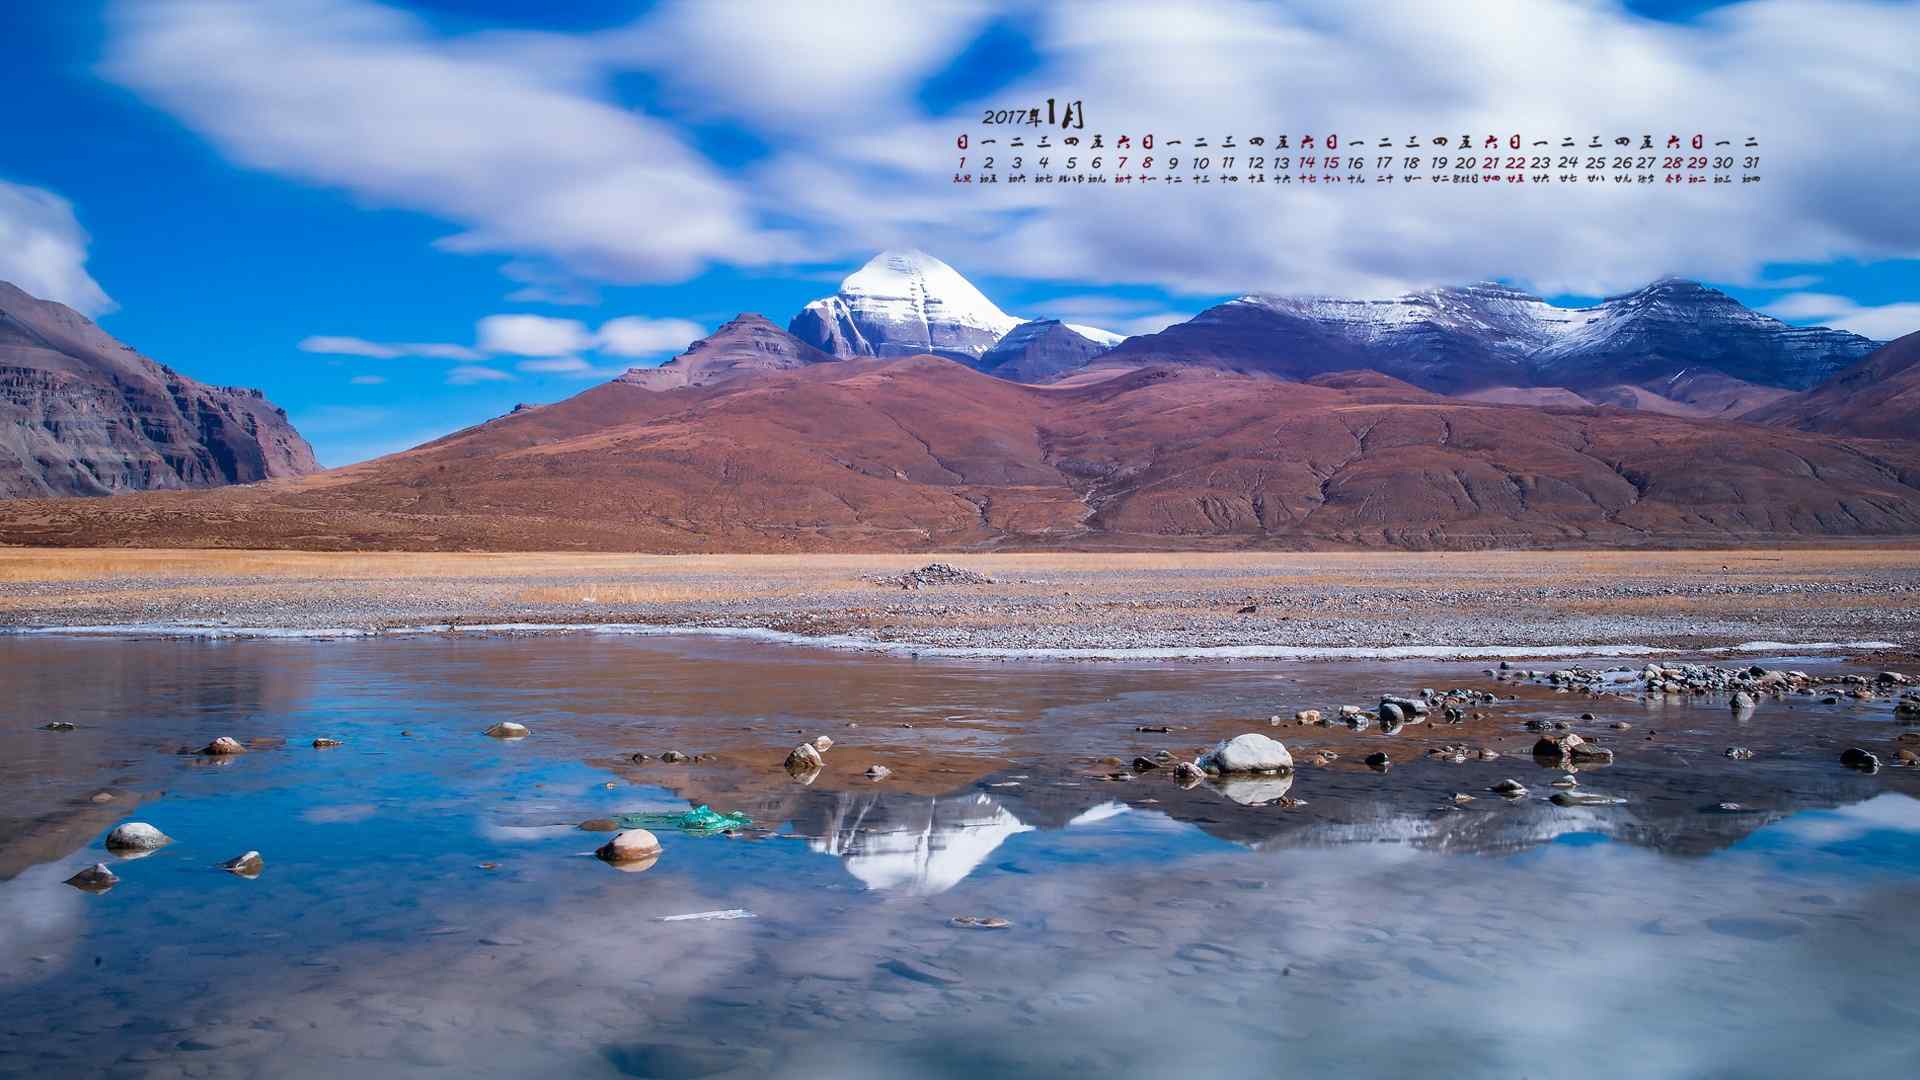 2017年1月日历西藏阿里风景高清壁纸